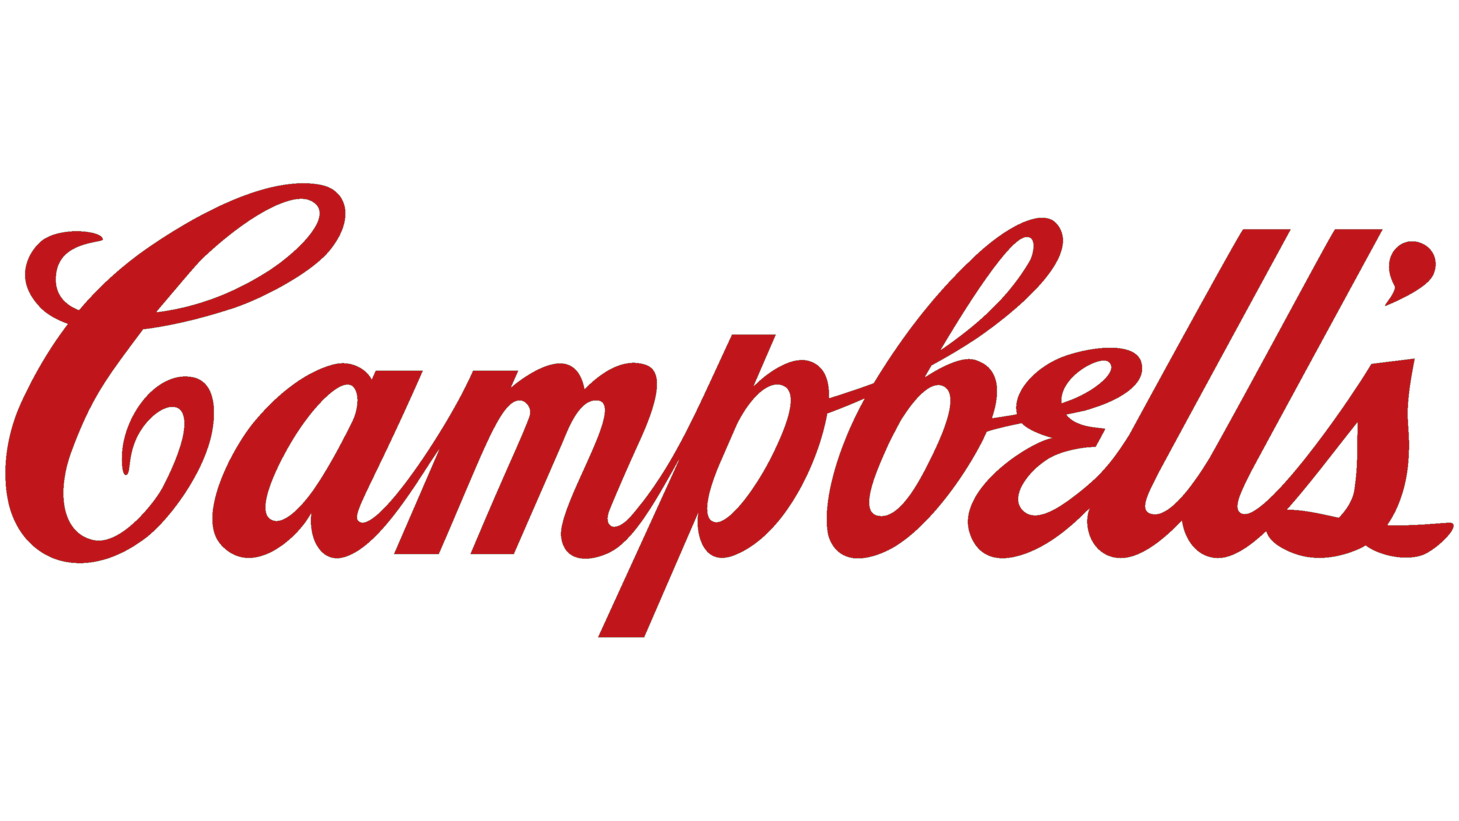 Campbells sign 2003